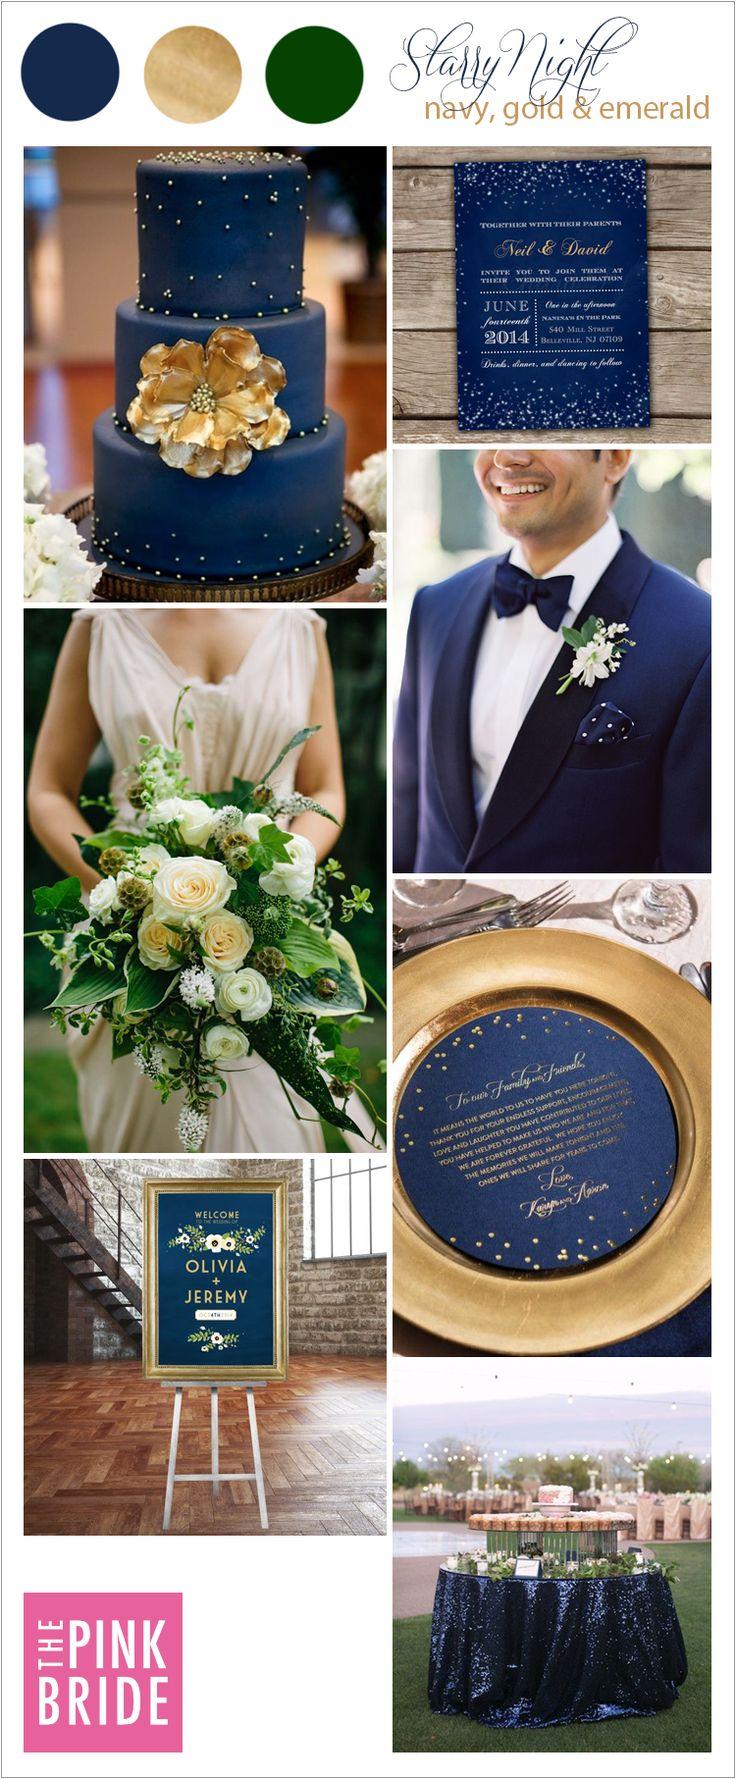 زفاف - Wedding Color Board: Starry Night Navy, Gold & Emerald